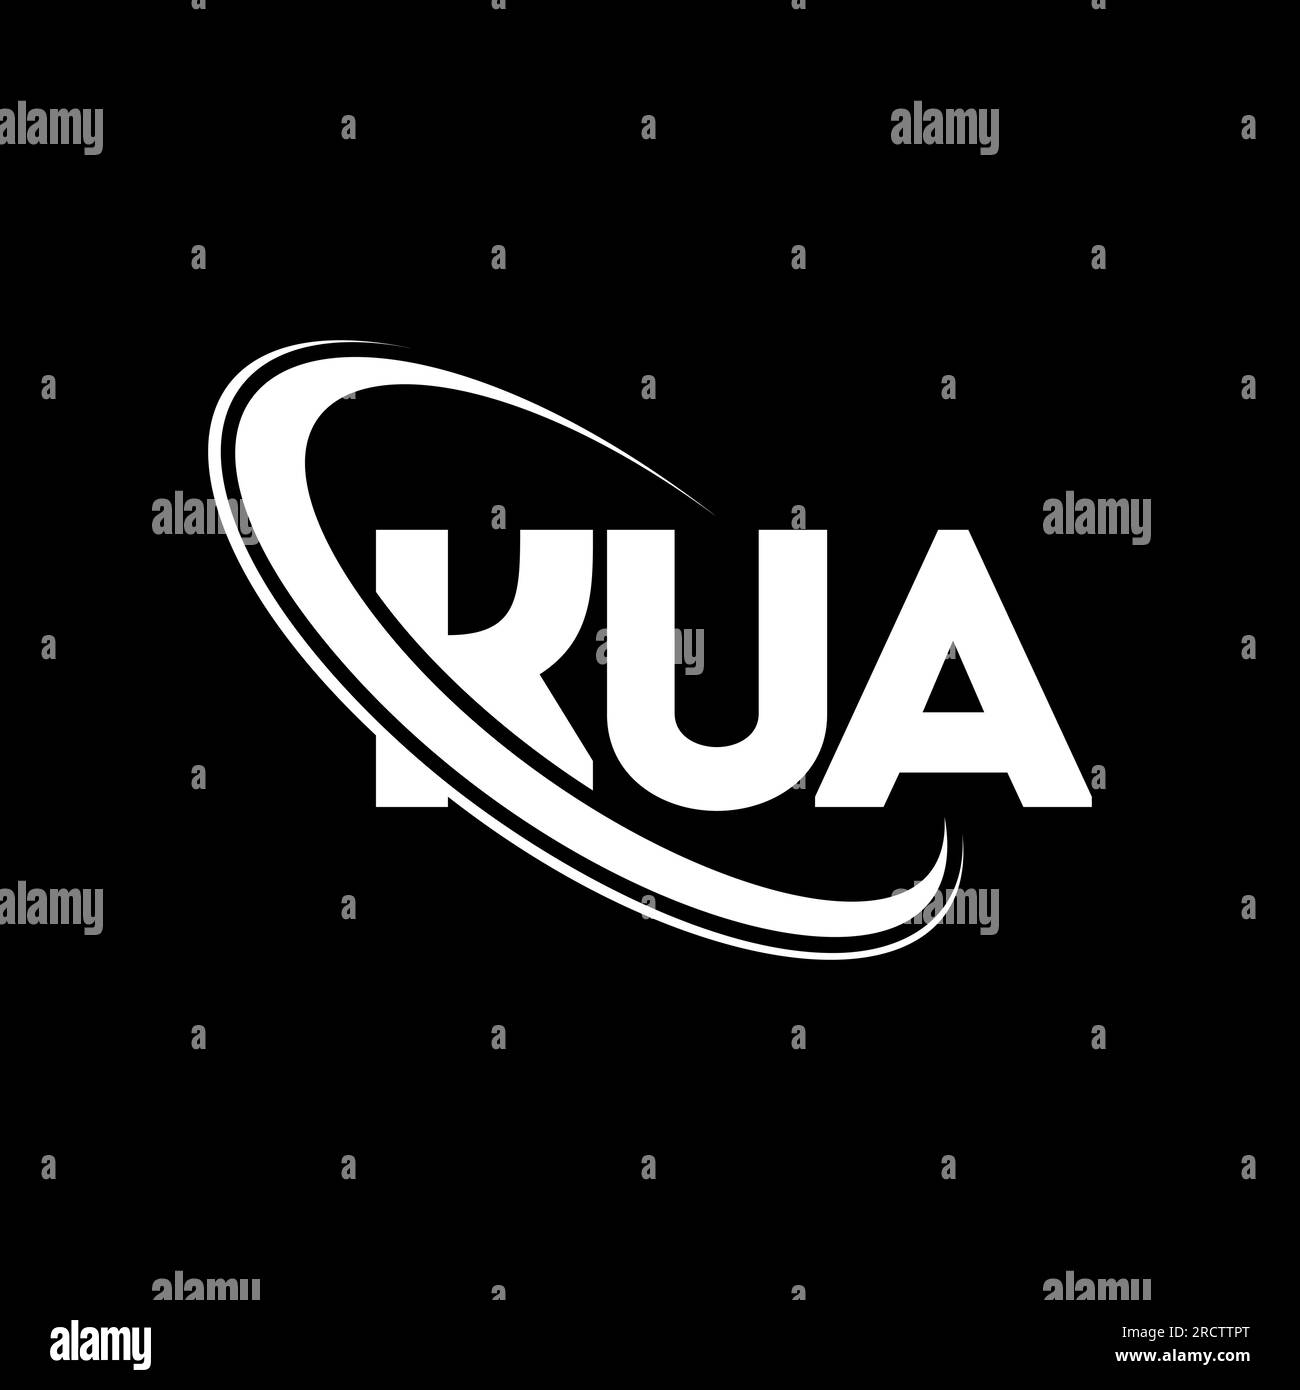 KUA-Logo. KUA-Brief. LOGO mit KUA-Buchstaben. Initialen KUA-Logo, verbunden mit einem Kreis und einem Monogramm-Logo in Großbuchstaben. KUA-Typografie für Technologie, Geschäfte Stock Vektor